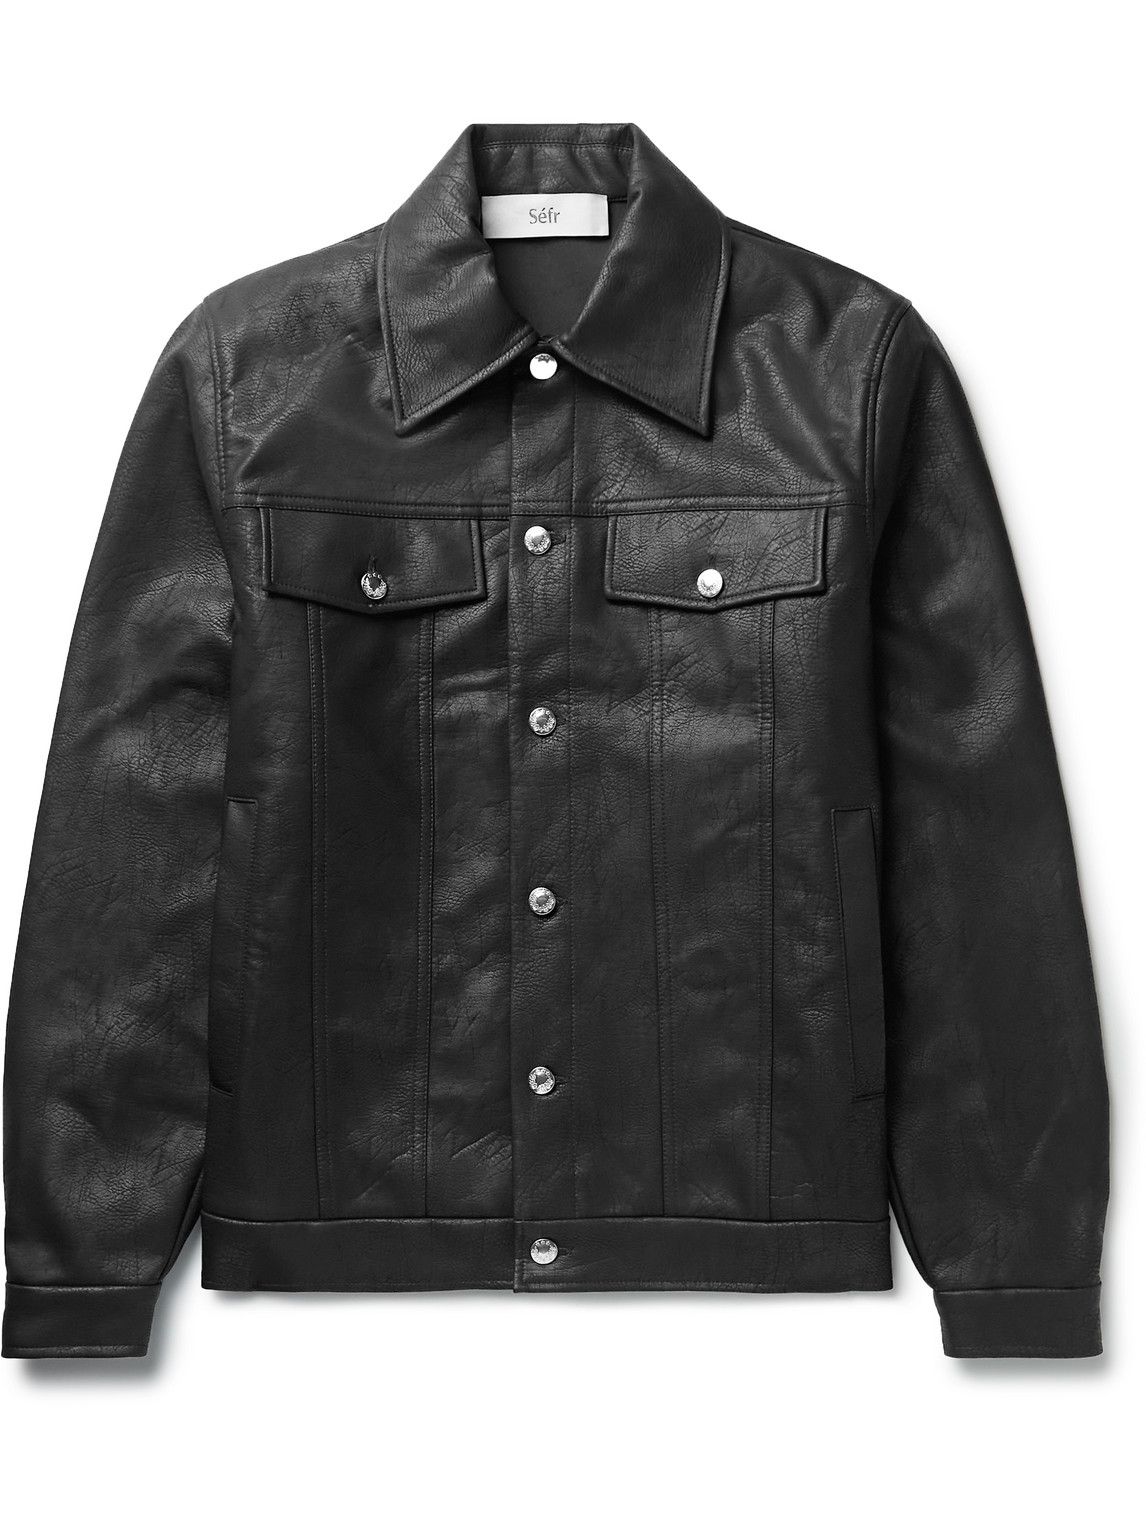 Séfr Dante Faux Leather Jacket in Black | Stylemi